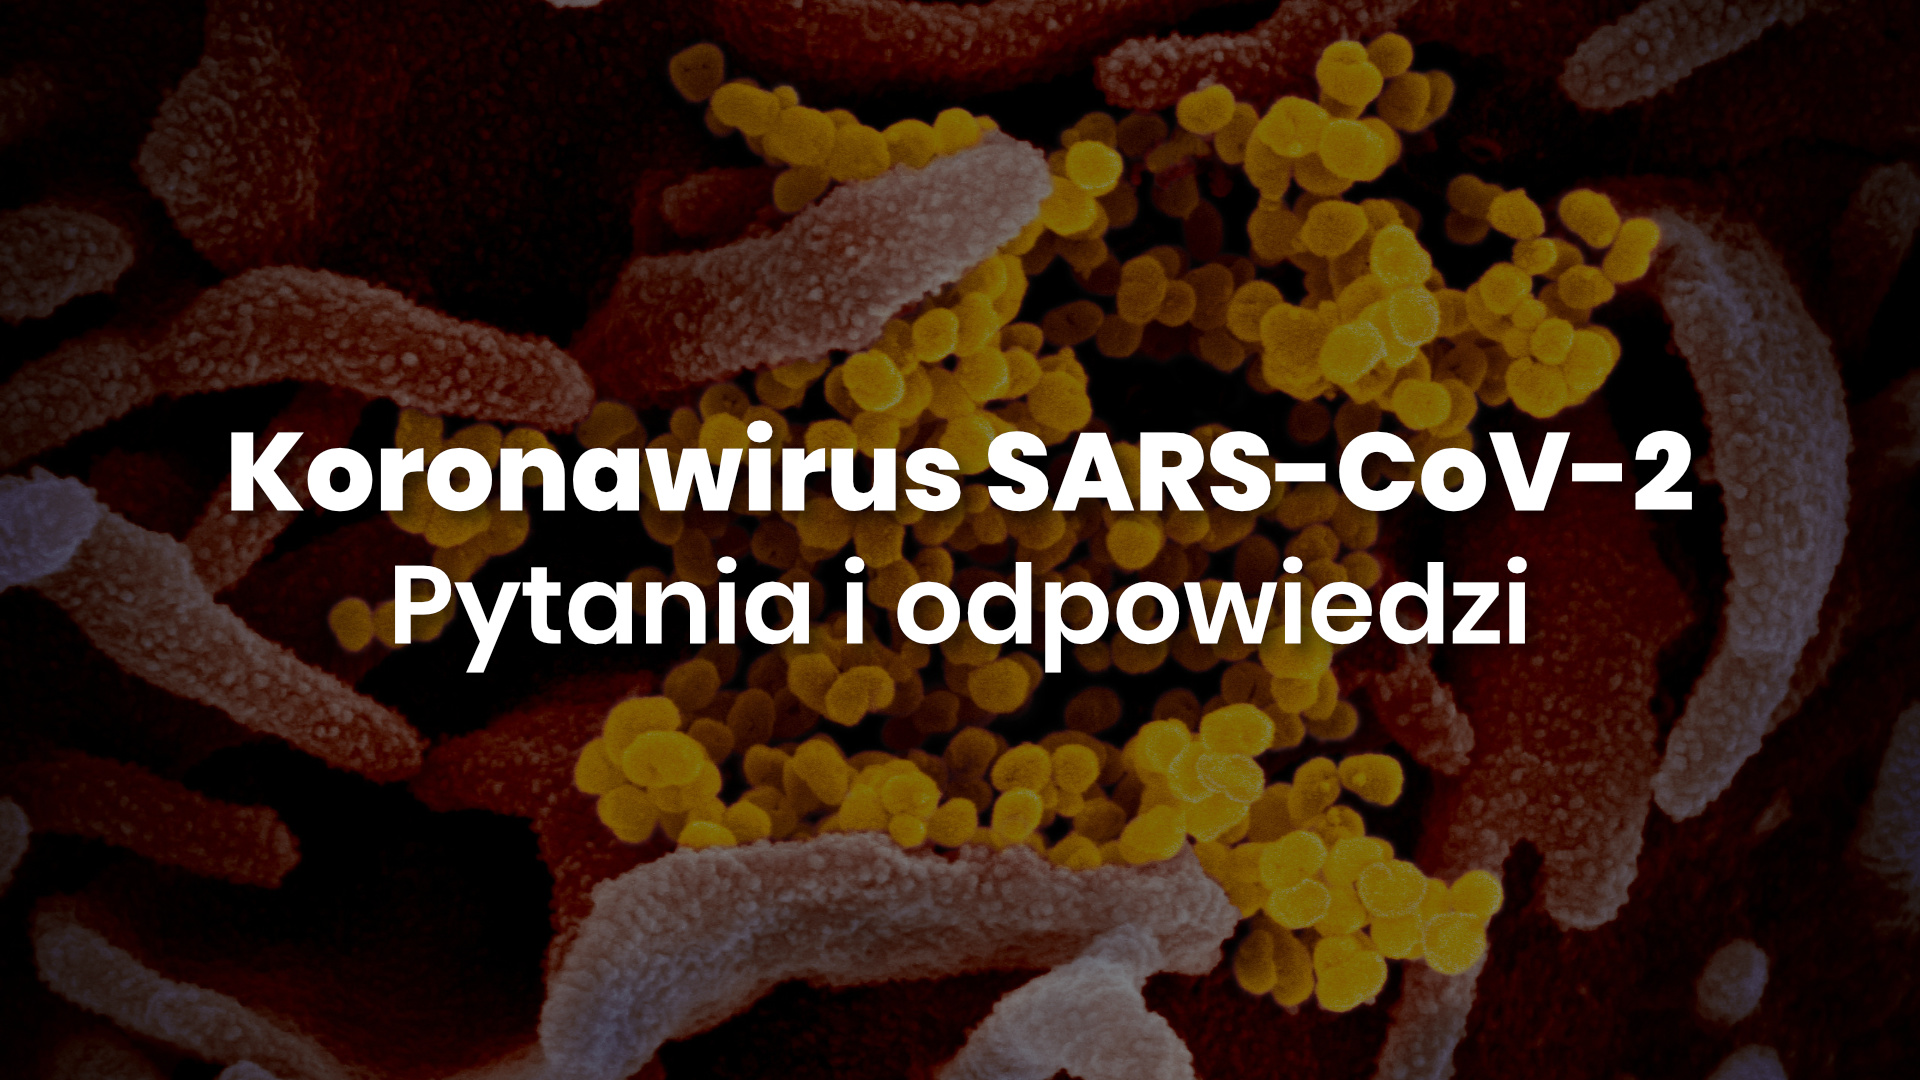 Zdjęcie koronawirusa z mikroskopu elektronowego. Dodany napis: "Koronawirus SARS-CoV-2 i choroba COVIC-19. Pytania i odpowiedzi".